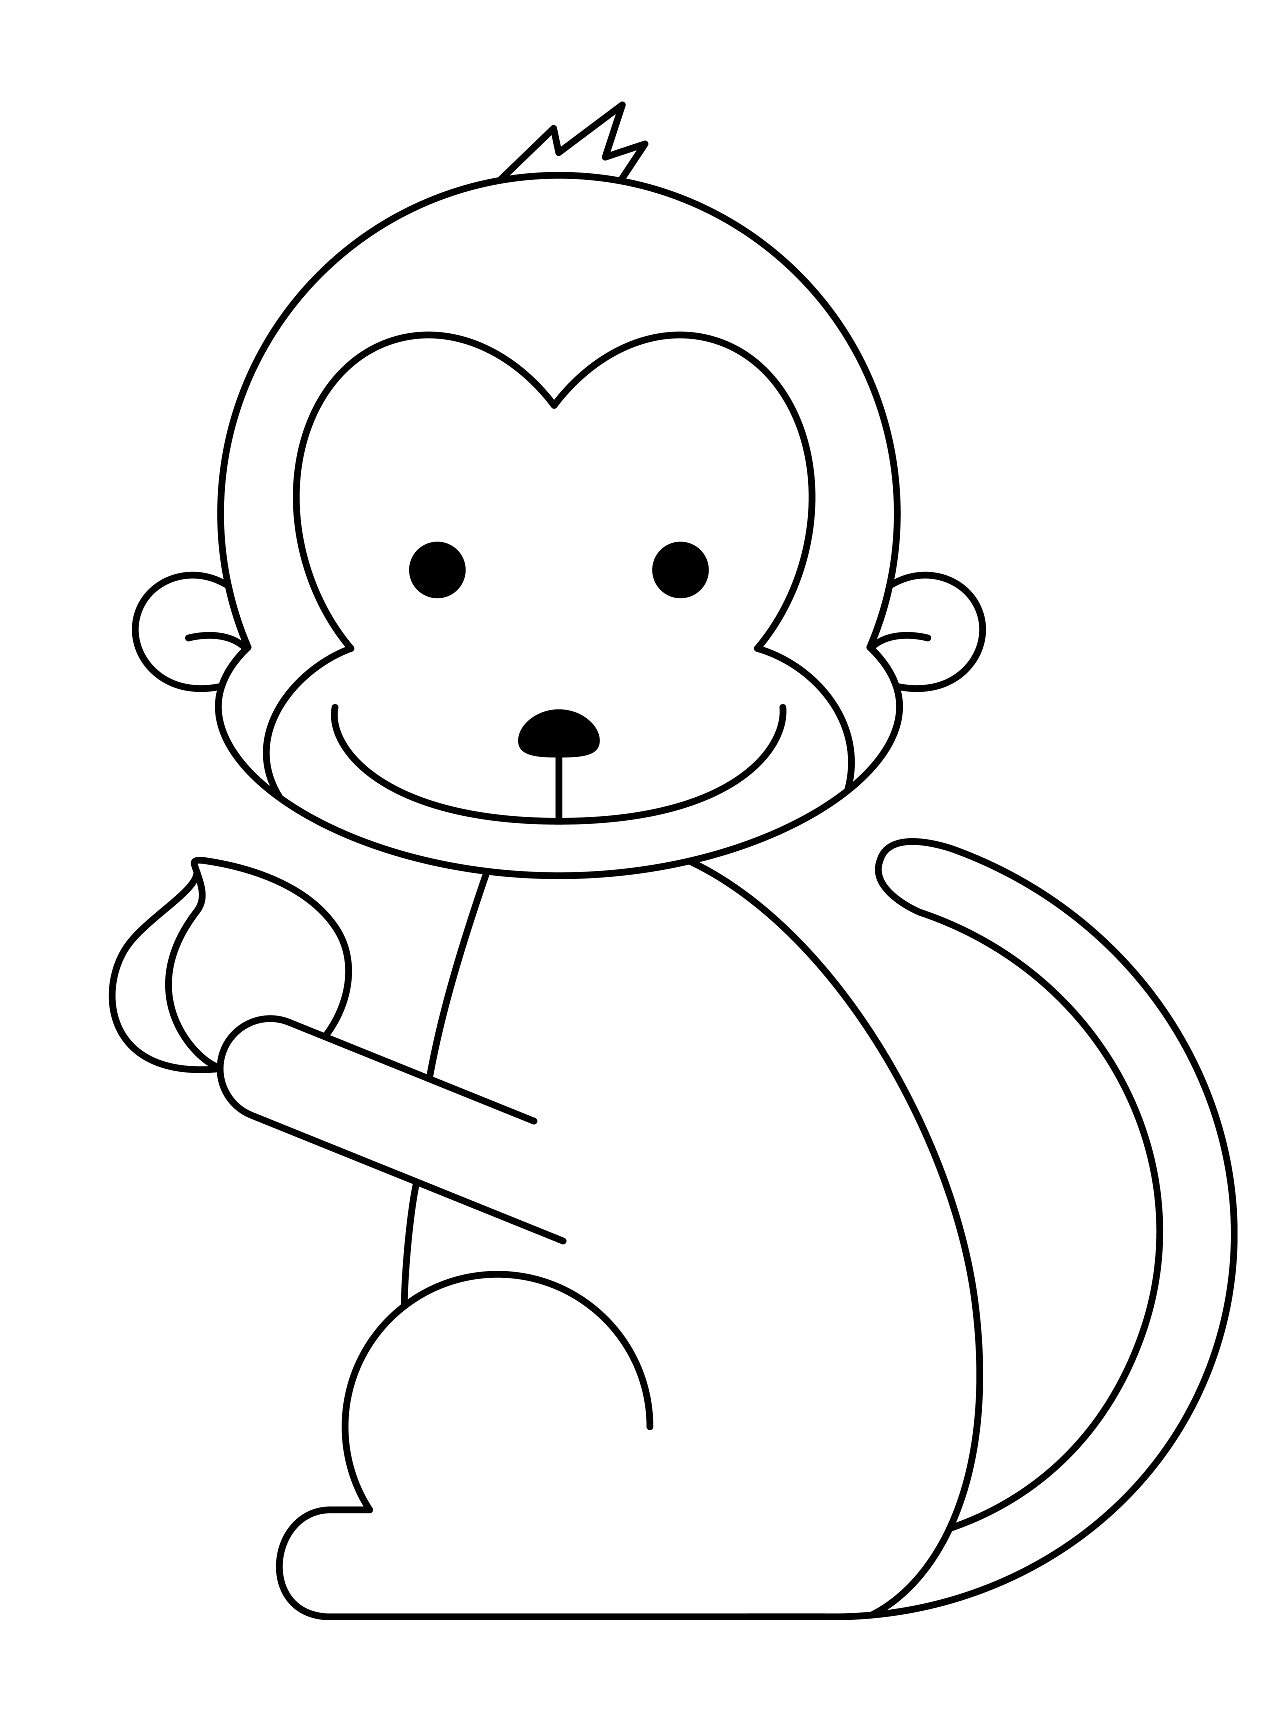 猴子的简笔画 简单图片